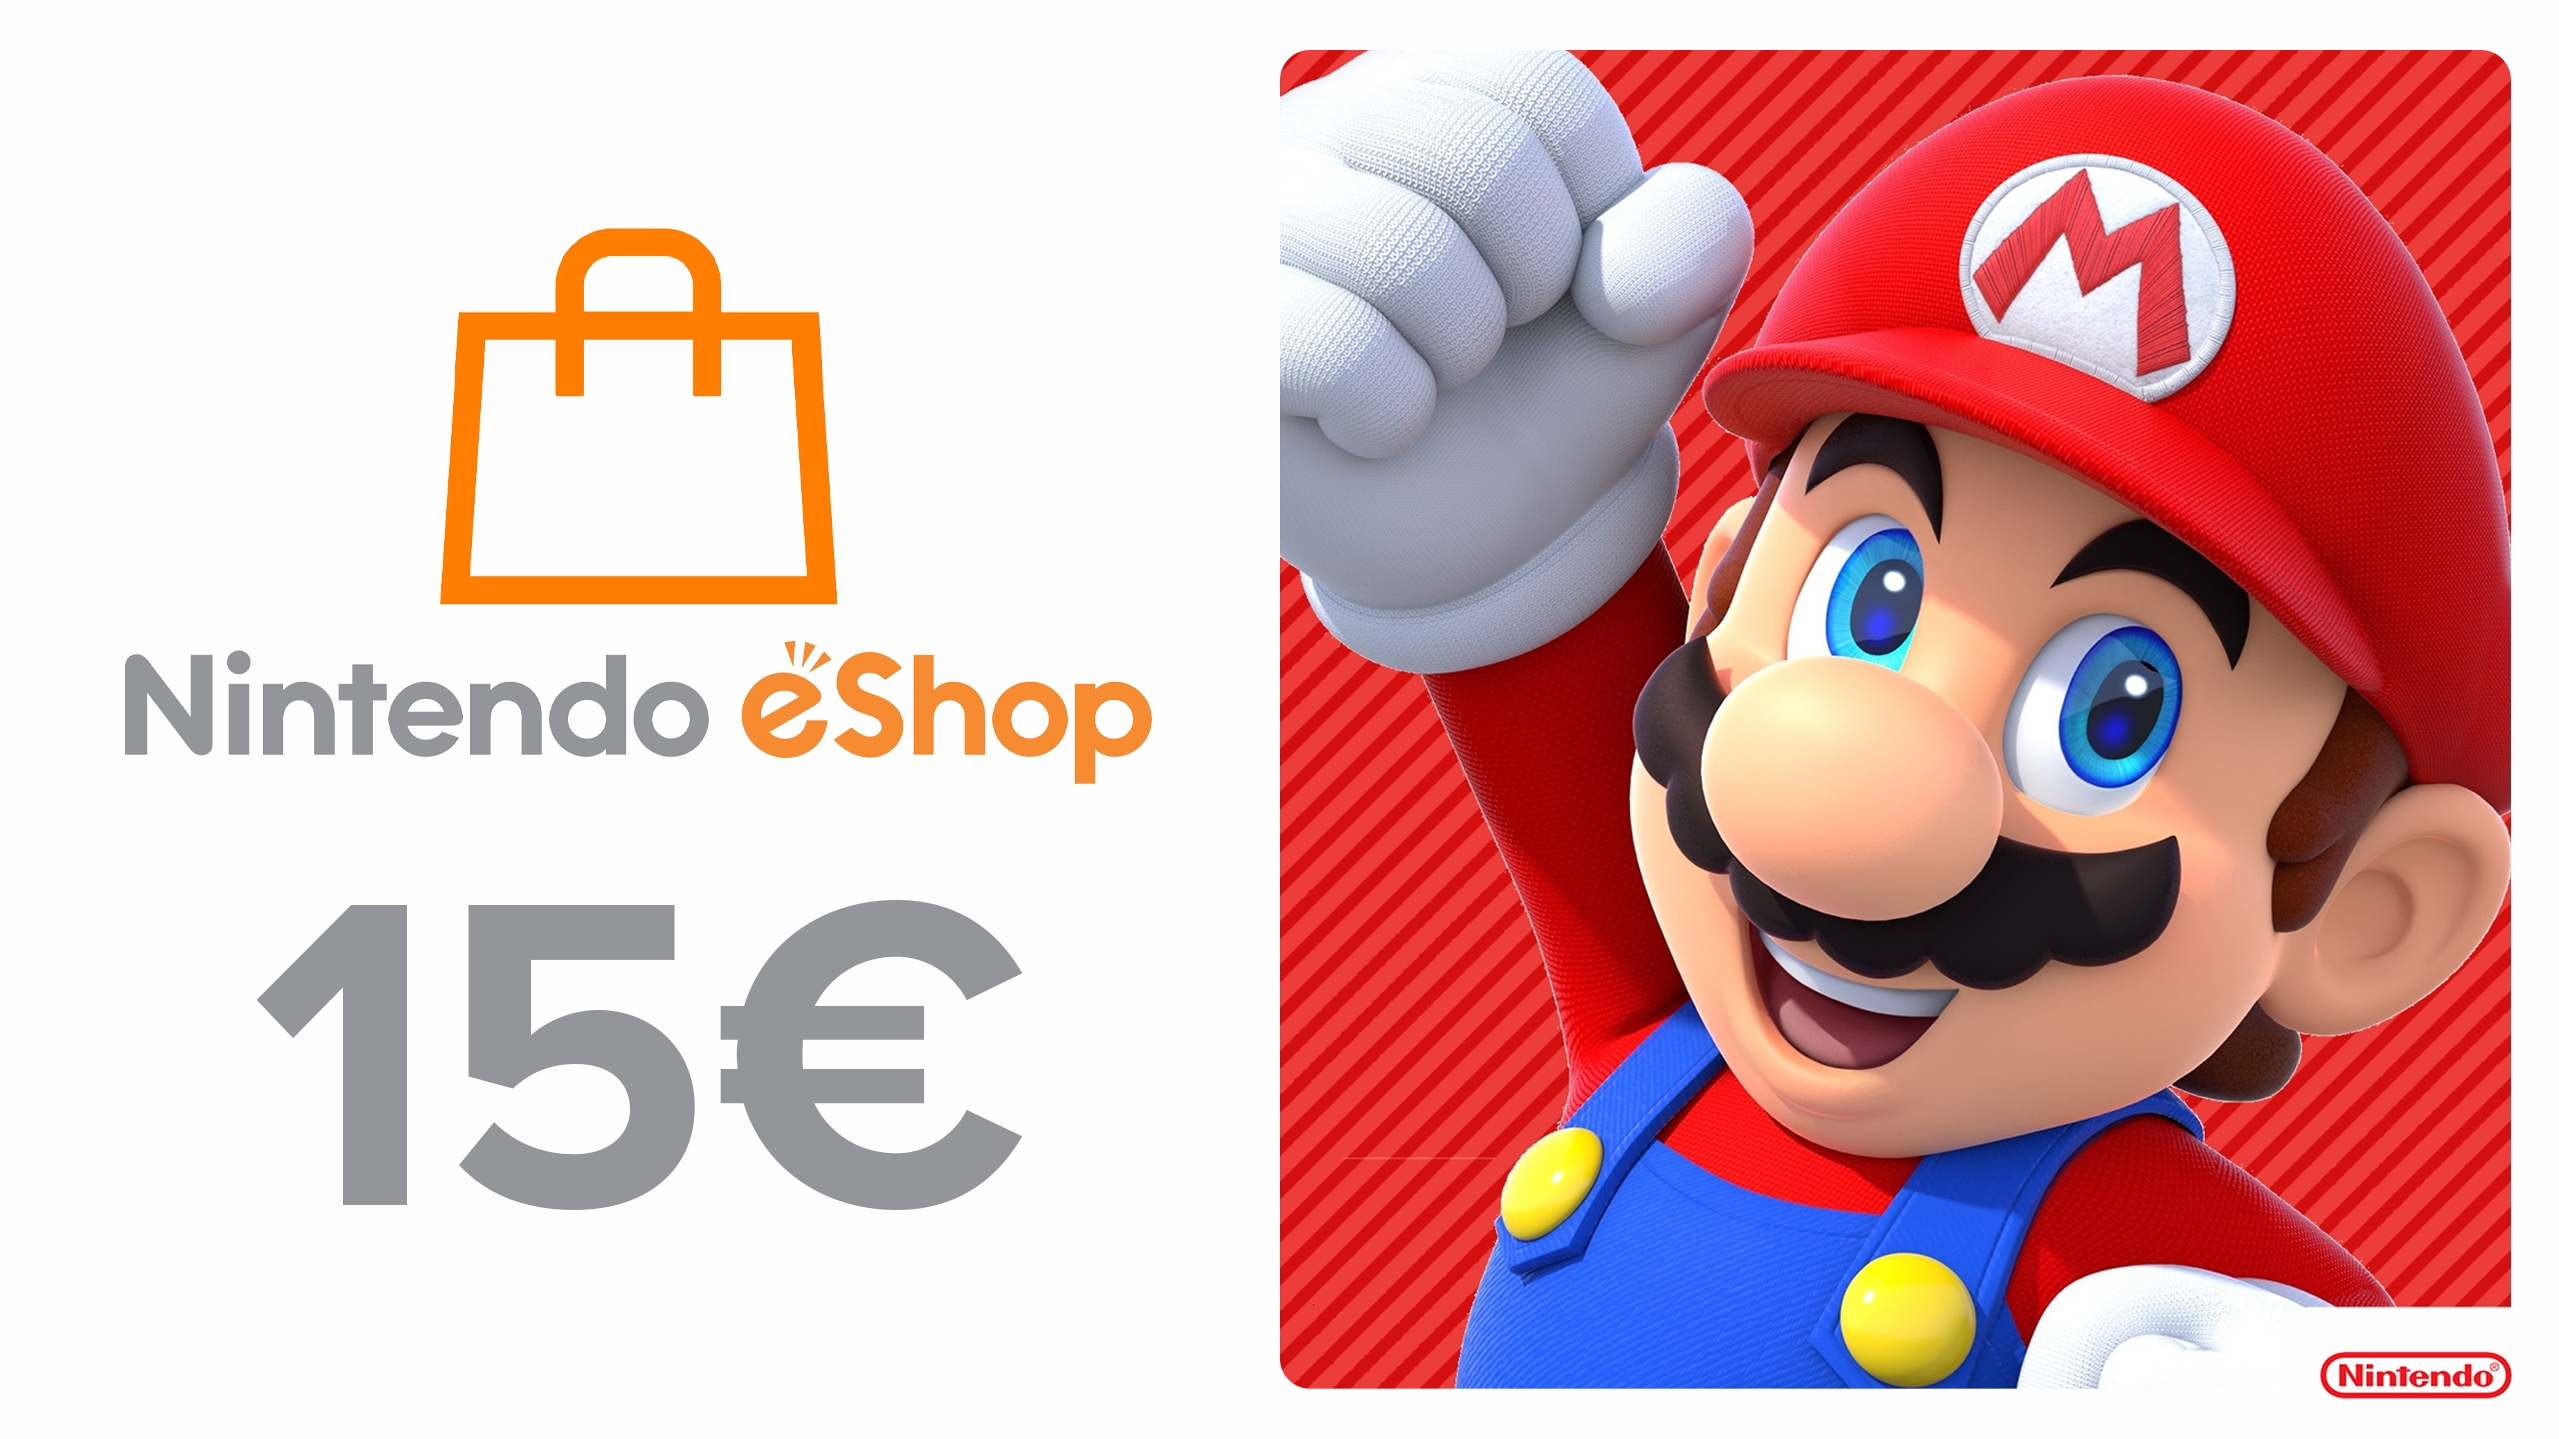 argument snap type Buy Nintendo eShop Card 15€ Nintendo Eshop